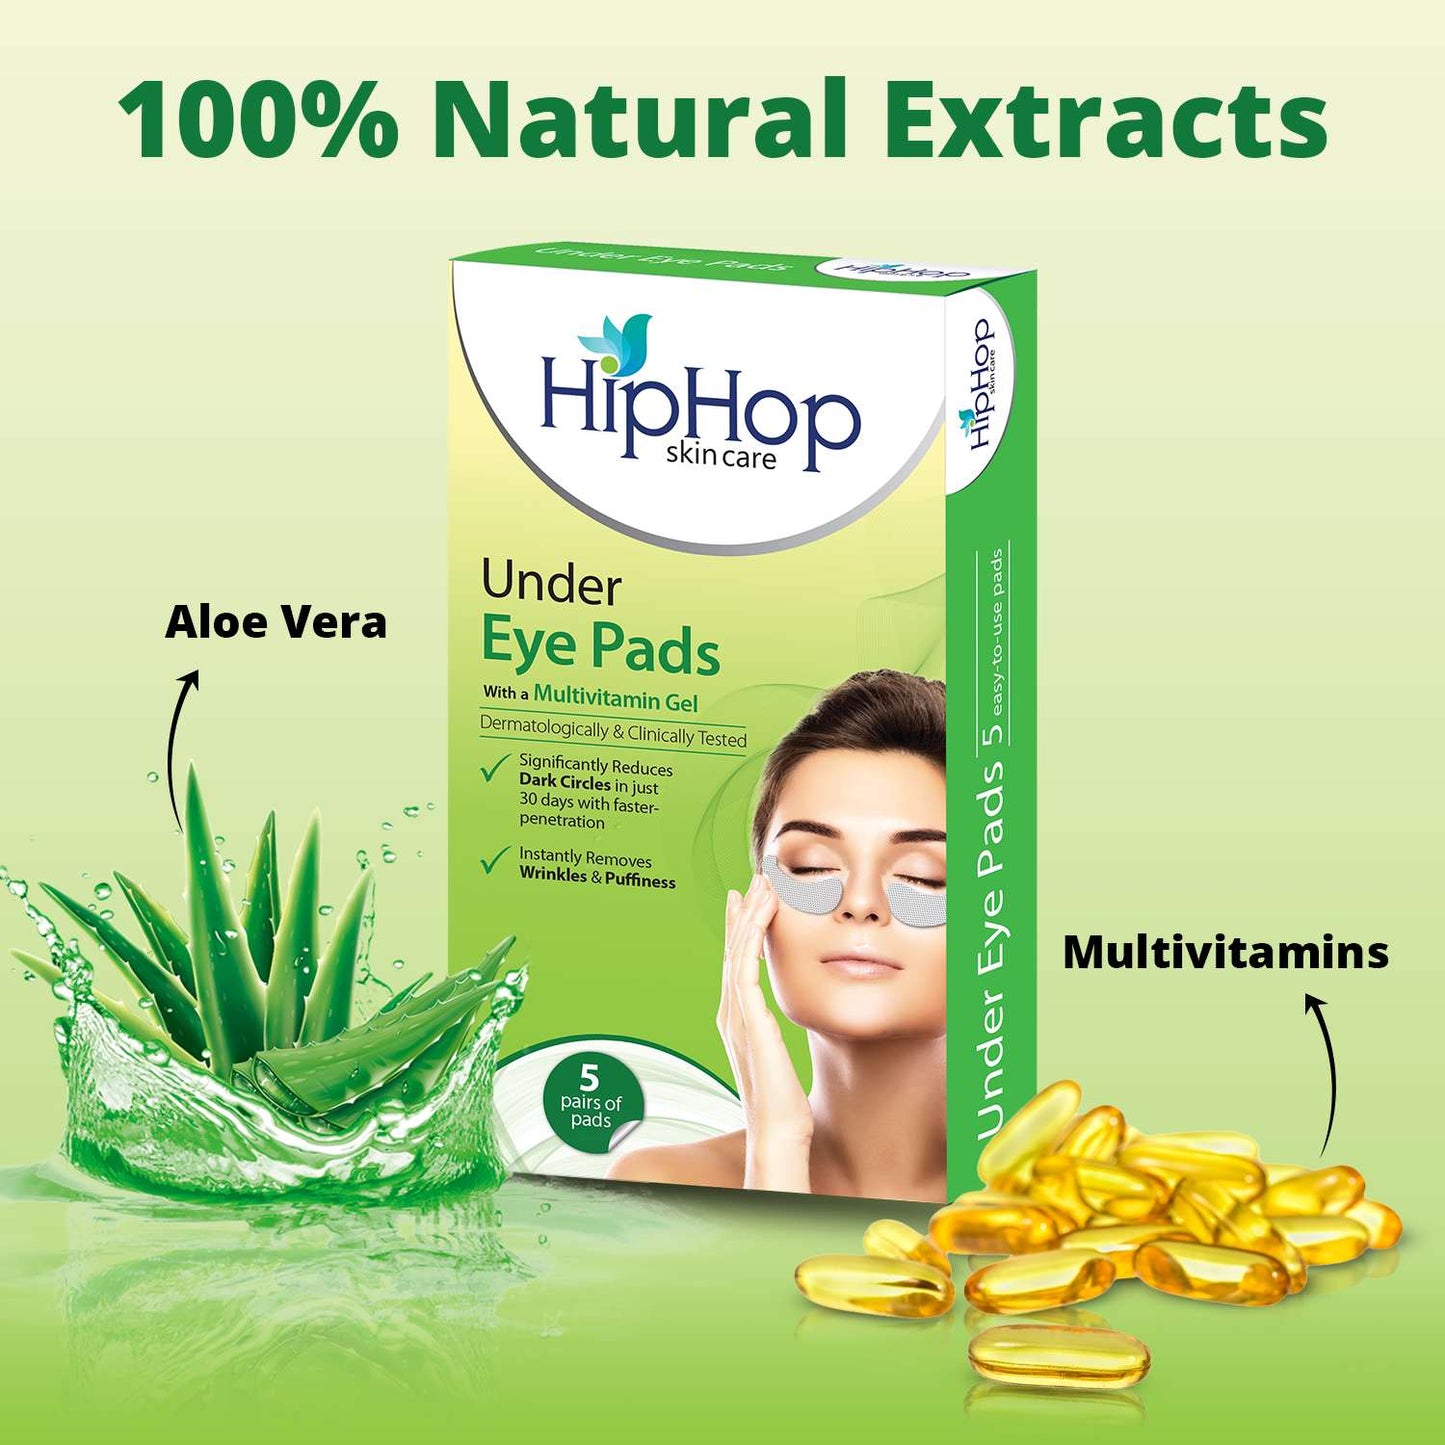 HipHop Facial Wax Strips (Argan Oil, 20 Strips) + Under Eye Pads (Multivitamin Gel, 5 Pairs)